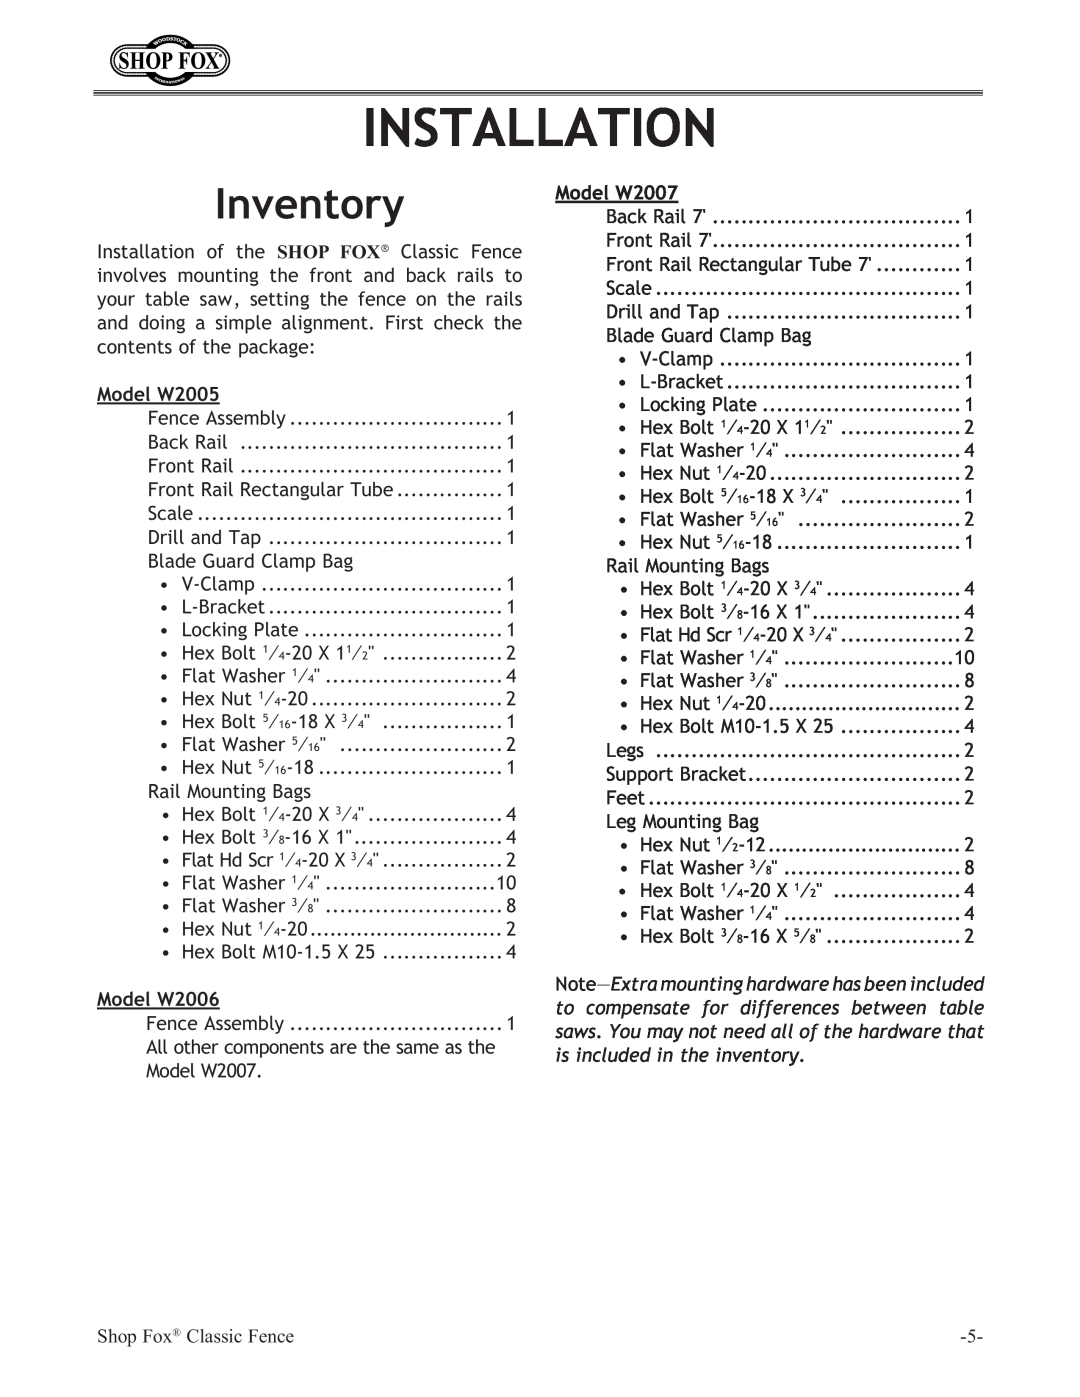 Woodstock instruction manual Installation, Inventory, Model W2005, Model W2006, Model W2007 